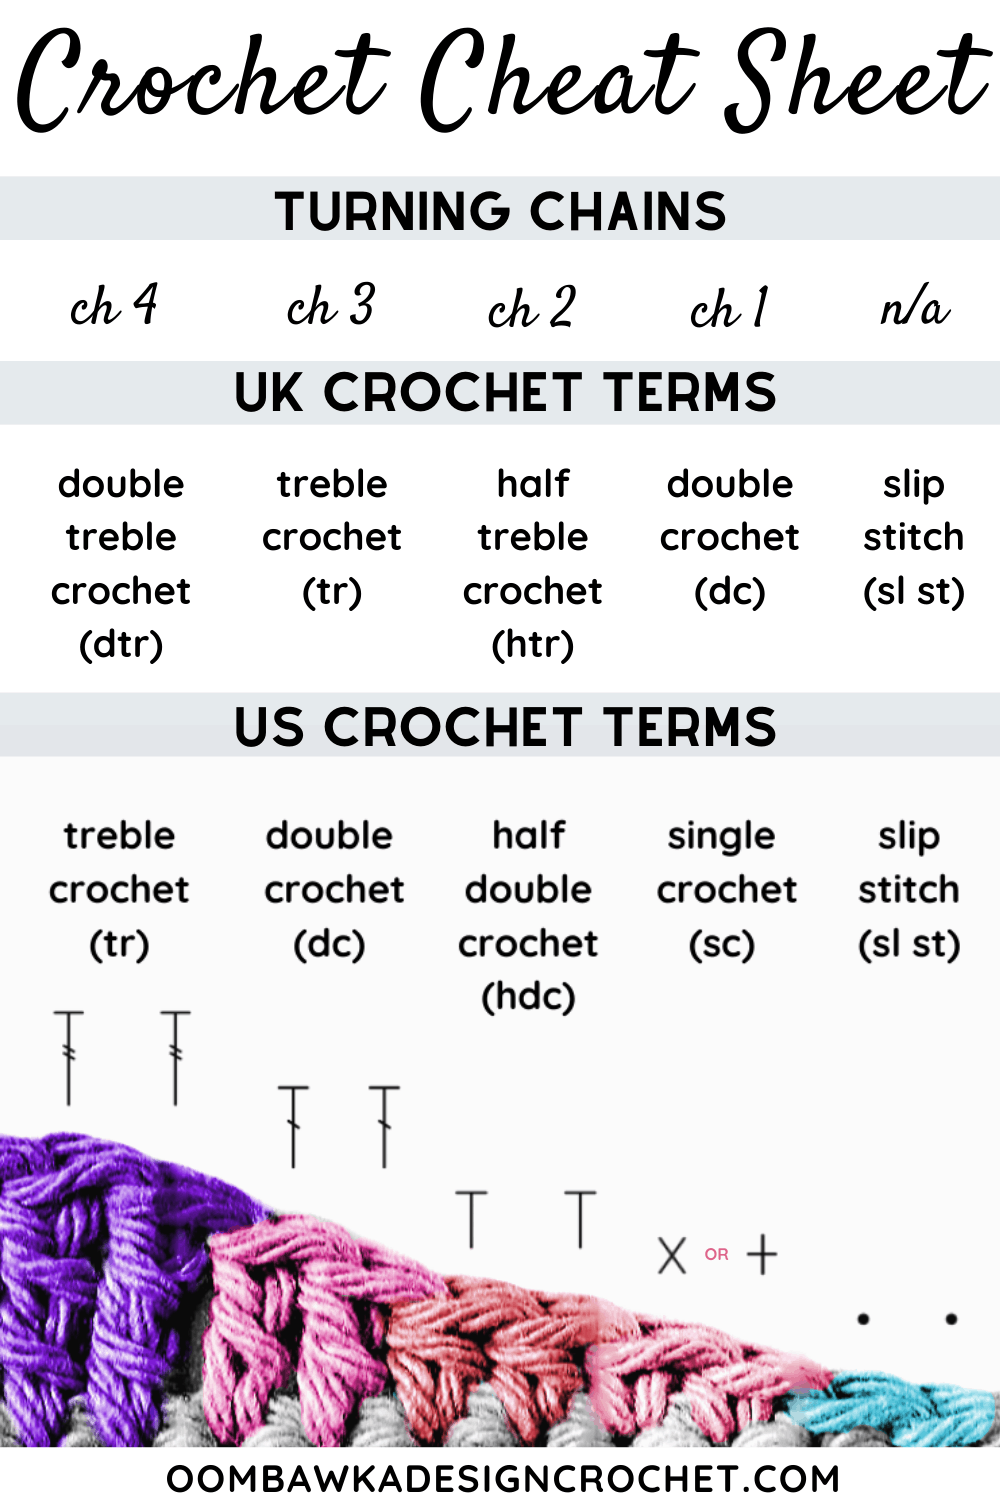 Crochet Cheat Sheet -   19 knitting and crochet posts ideas